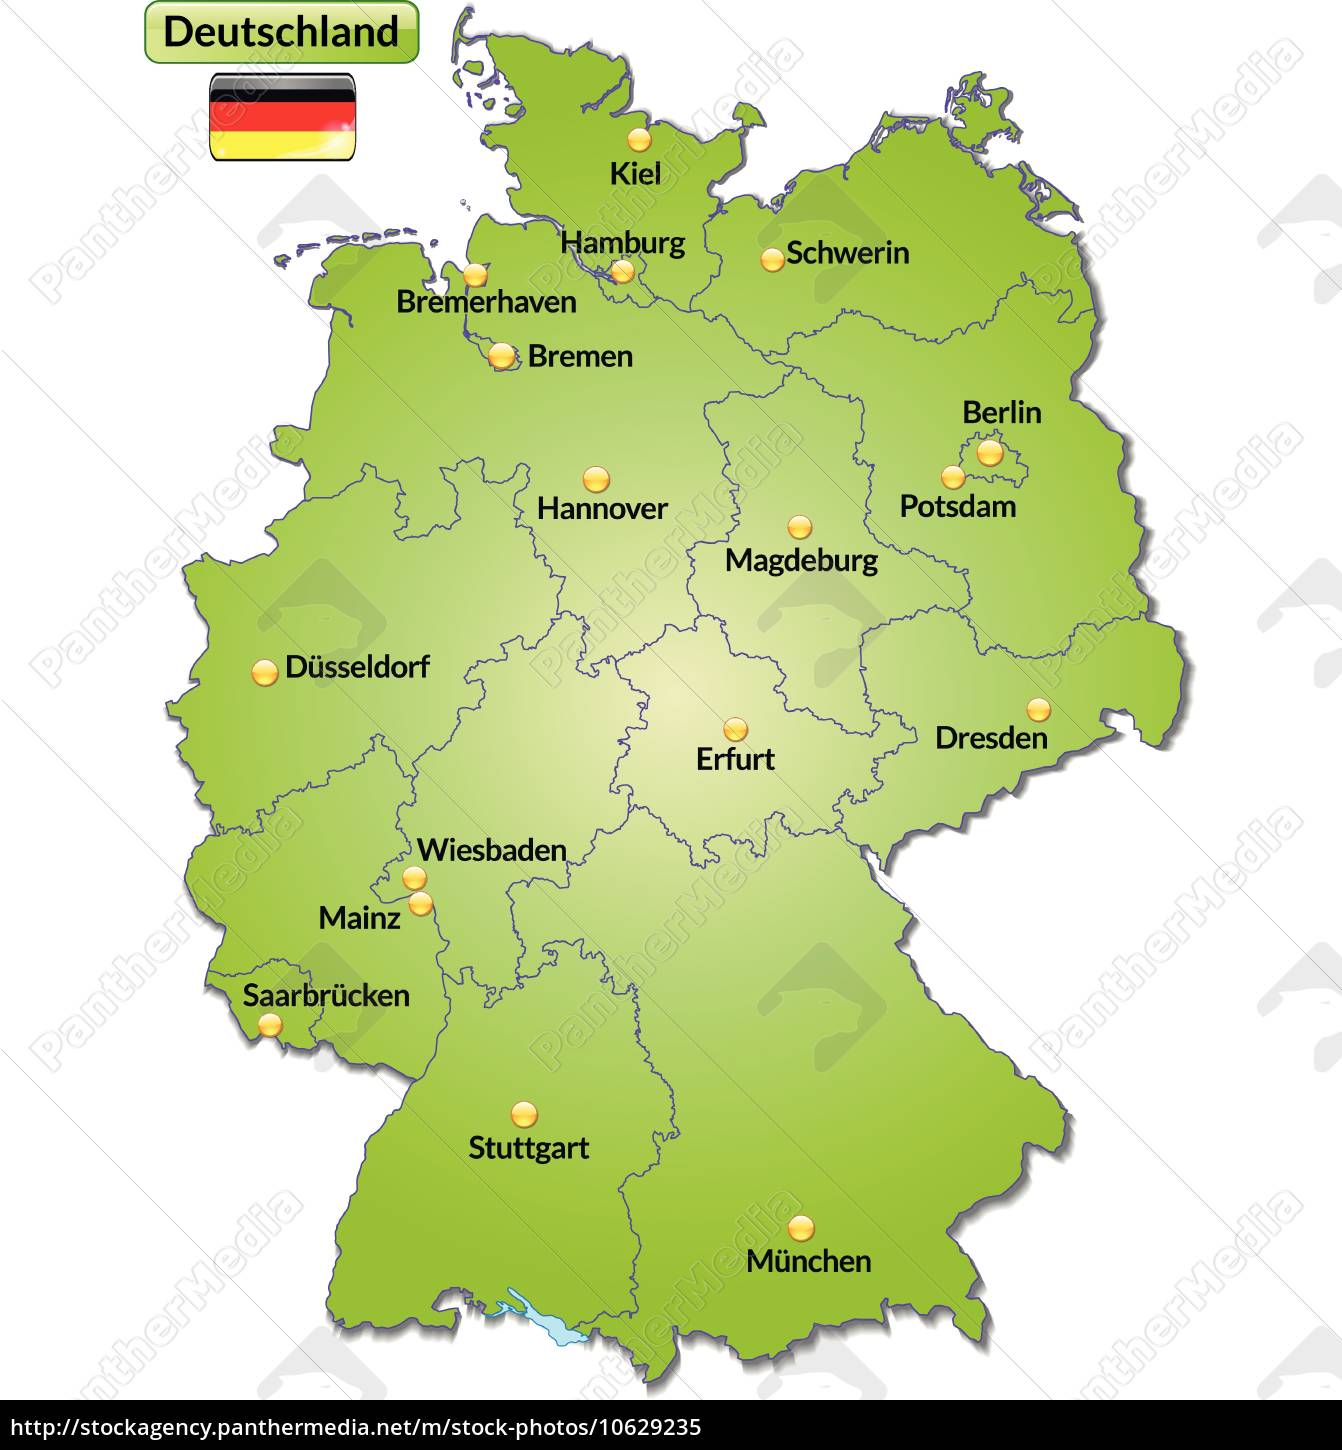 Kort Over Tyskland kort over tyskland med hovedstæder i grønt   Royalty Free Image  Kort Over Tyskland